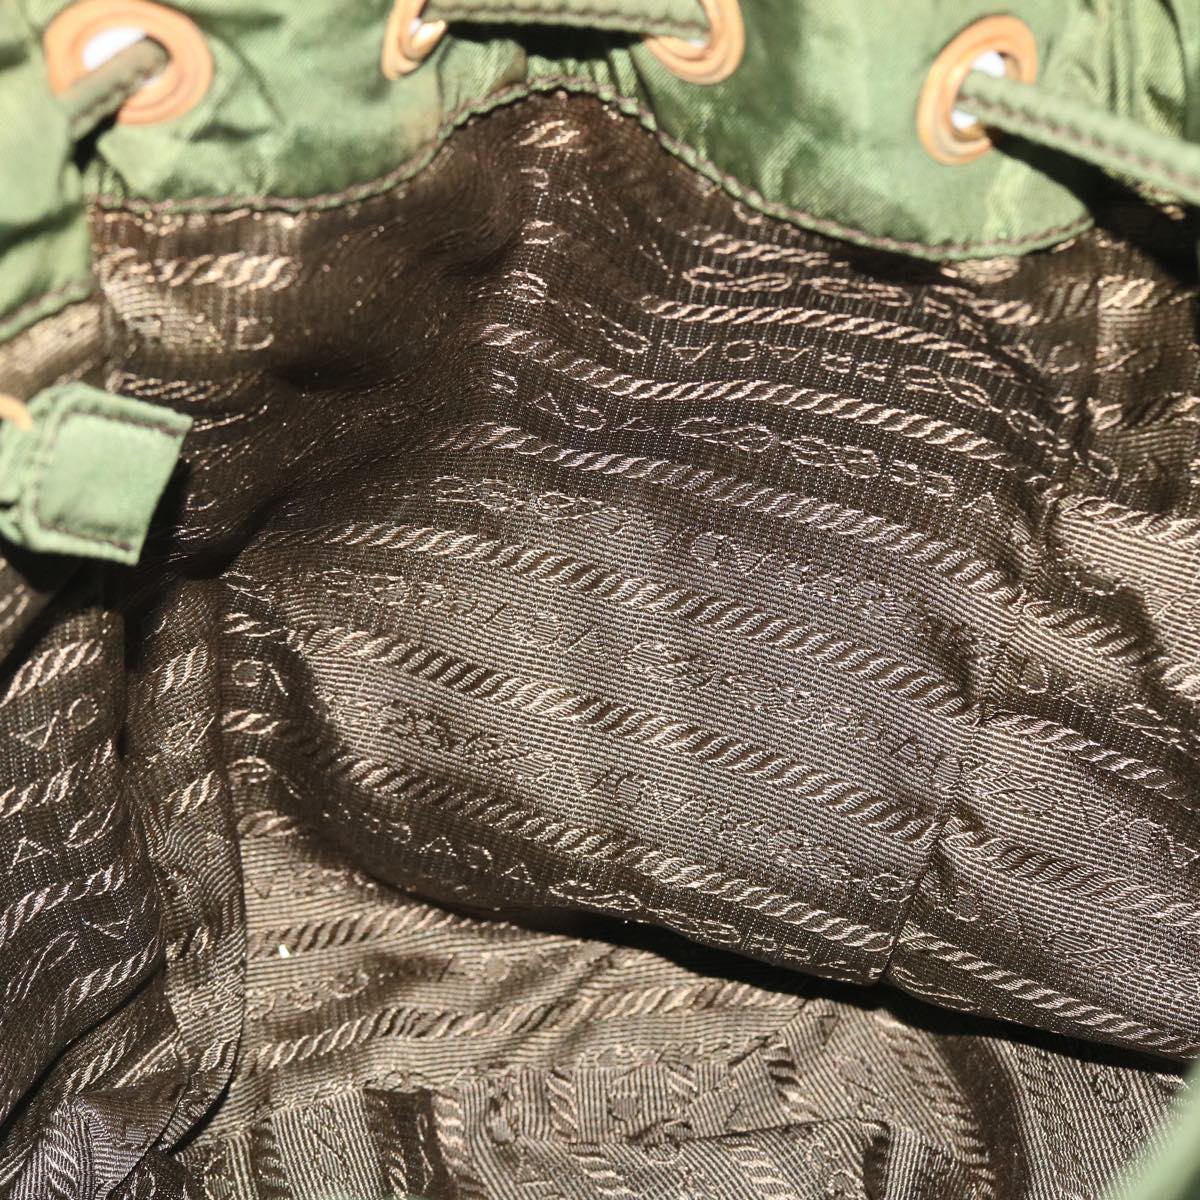 PRADA Backpack Nylon Green Auth bs8058